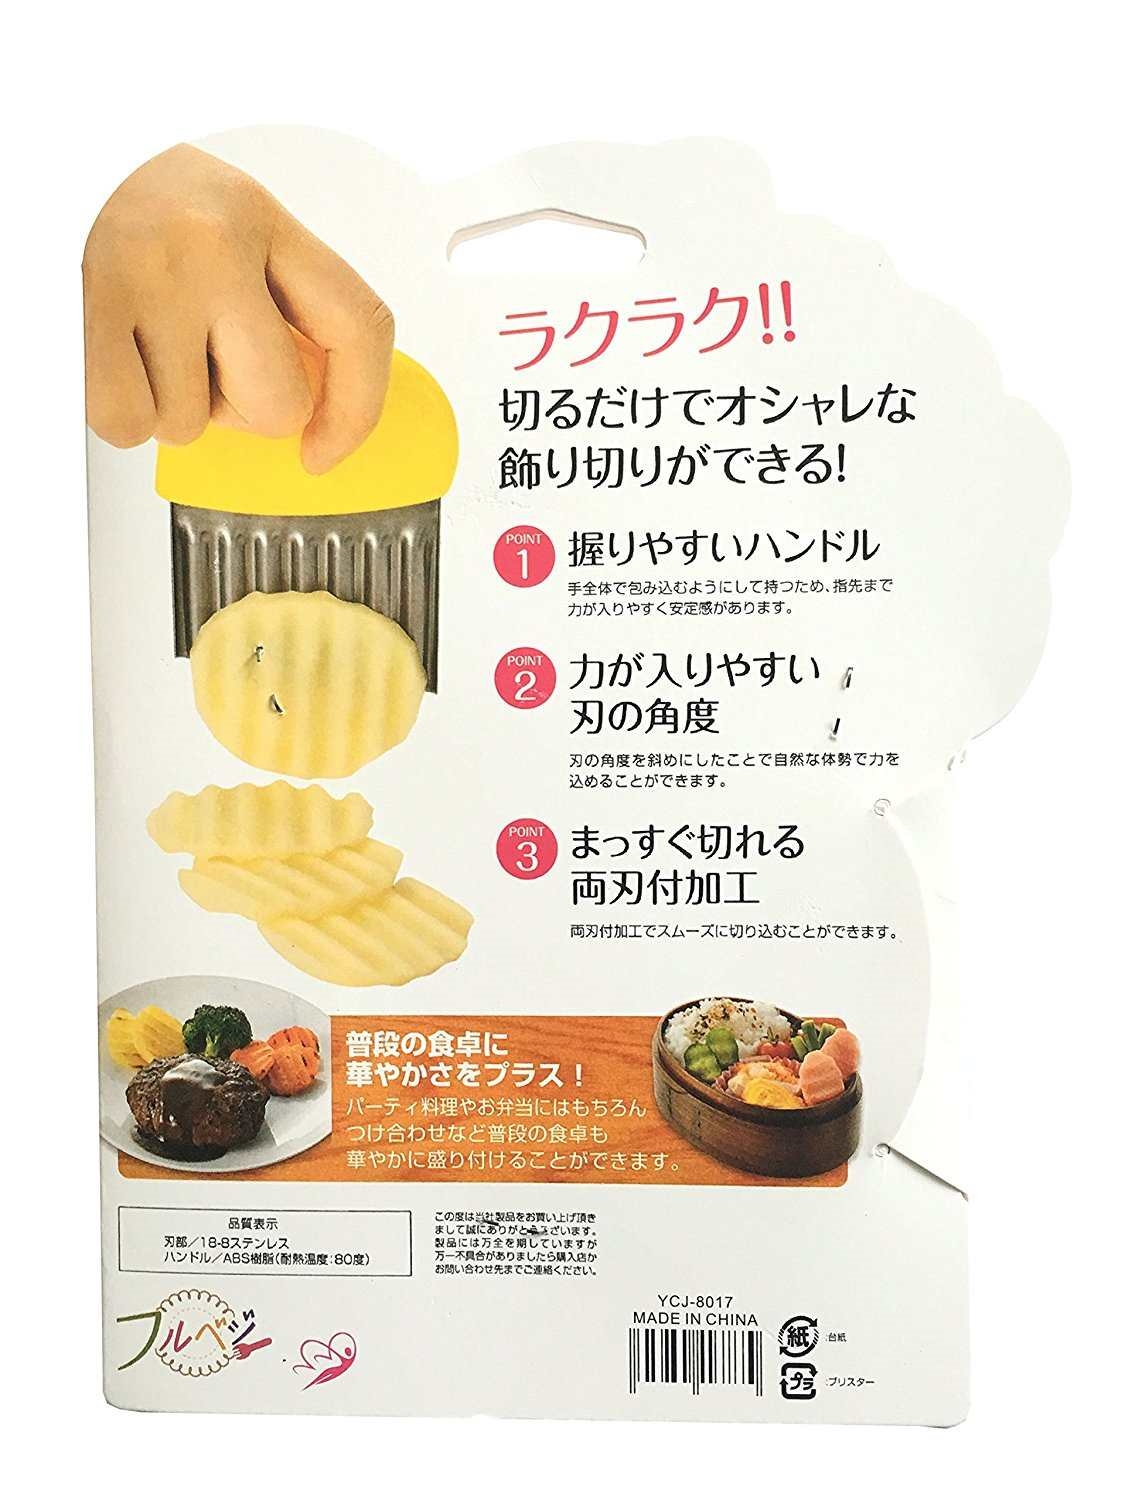 Dụng cụ cắt khoai tây và củ quả đa năng xuất Nhật